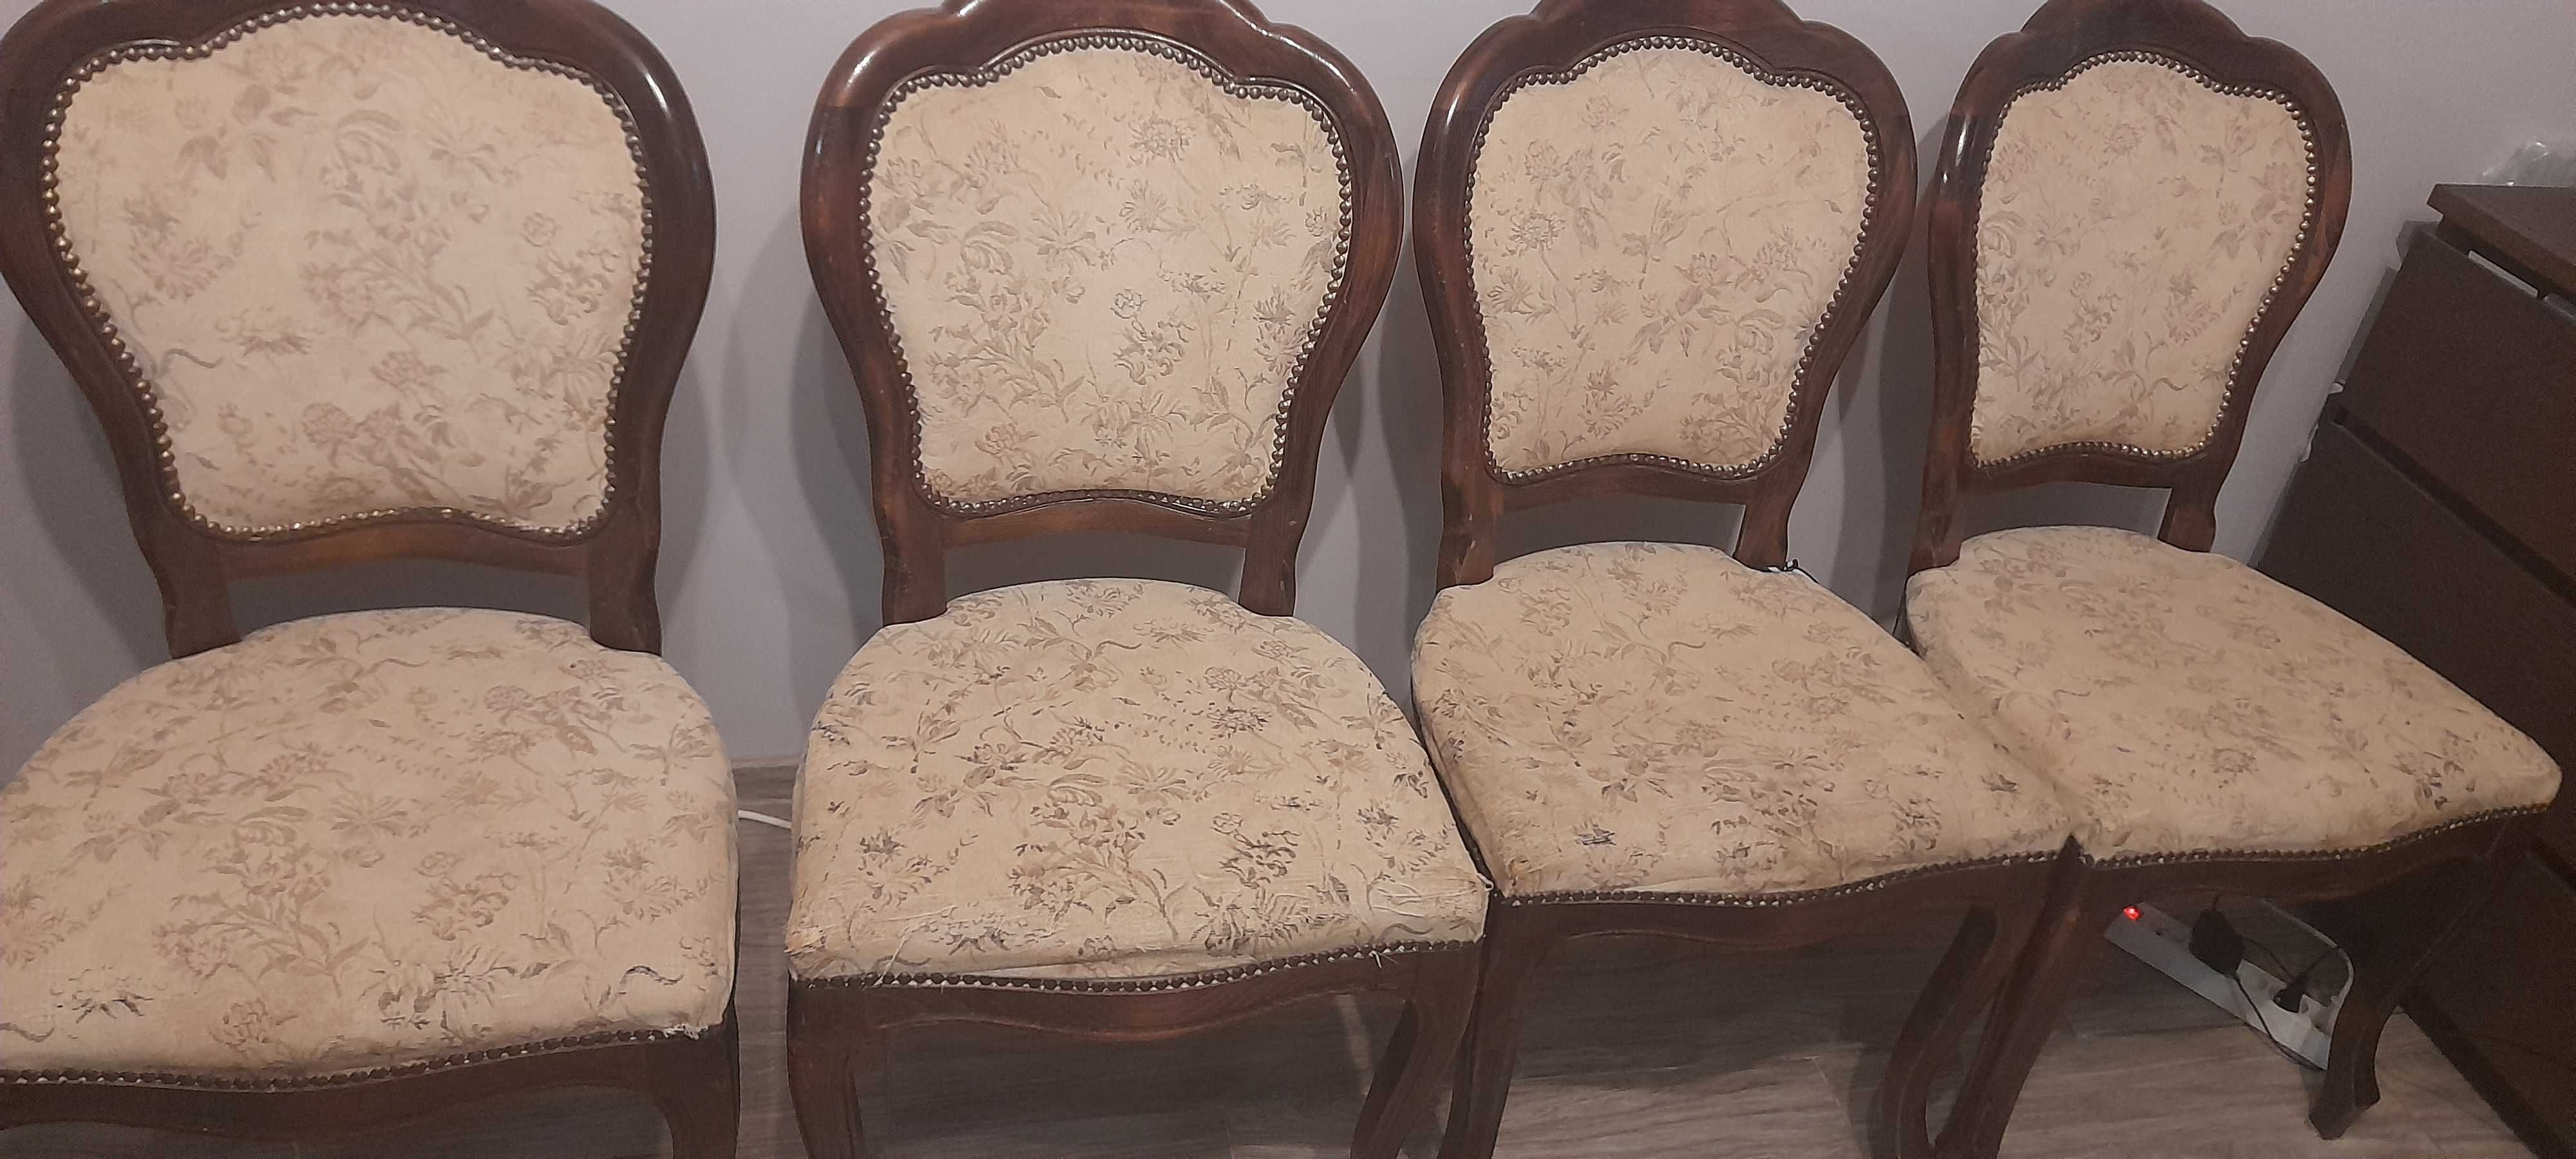 sprzedam krzesła 4 szt do renowacji ,krzesła przyjechły z Niemiec